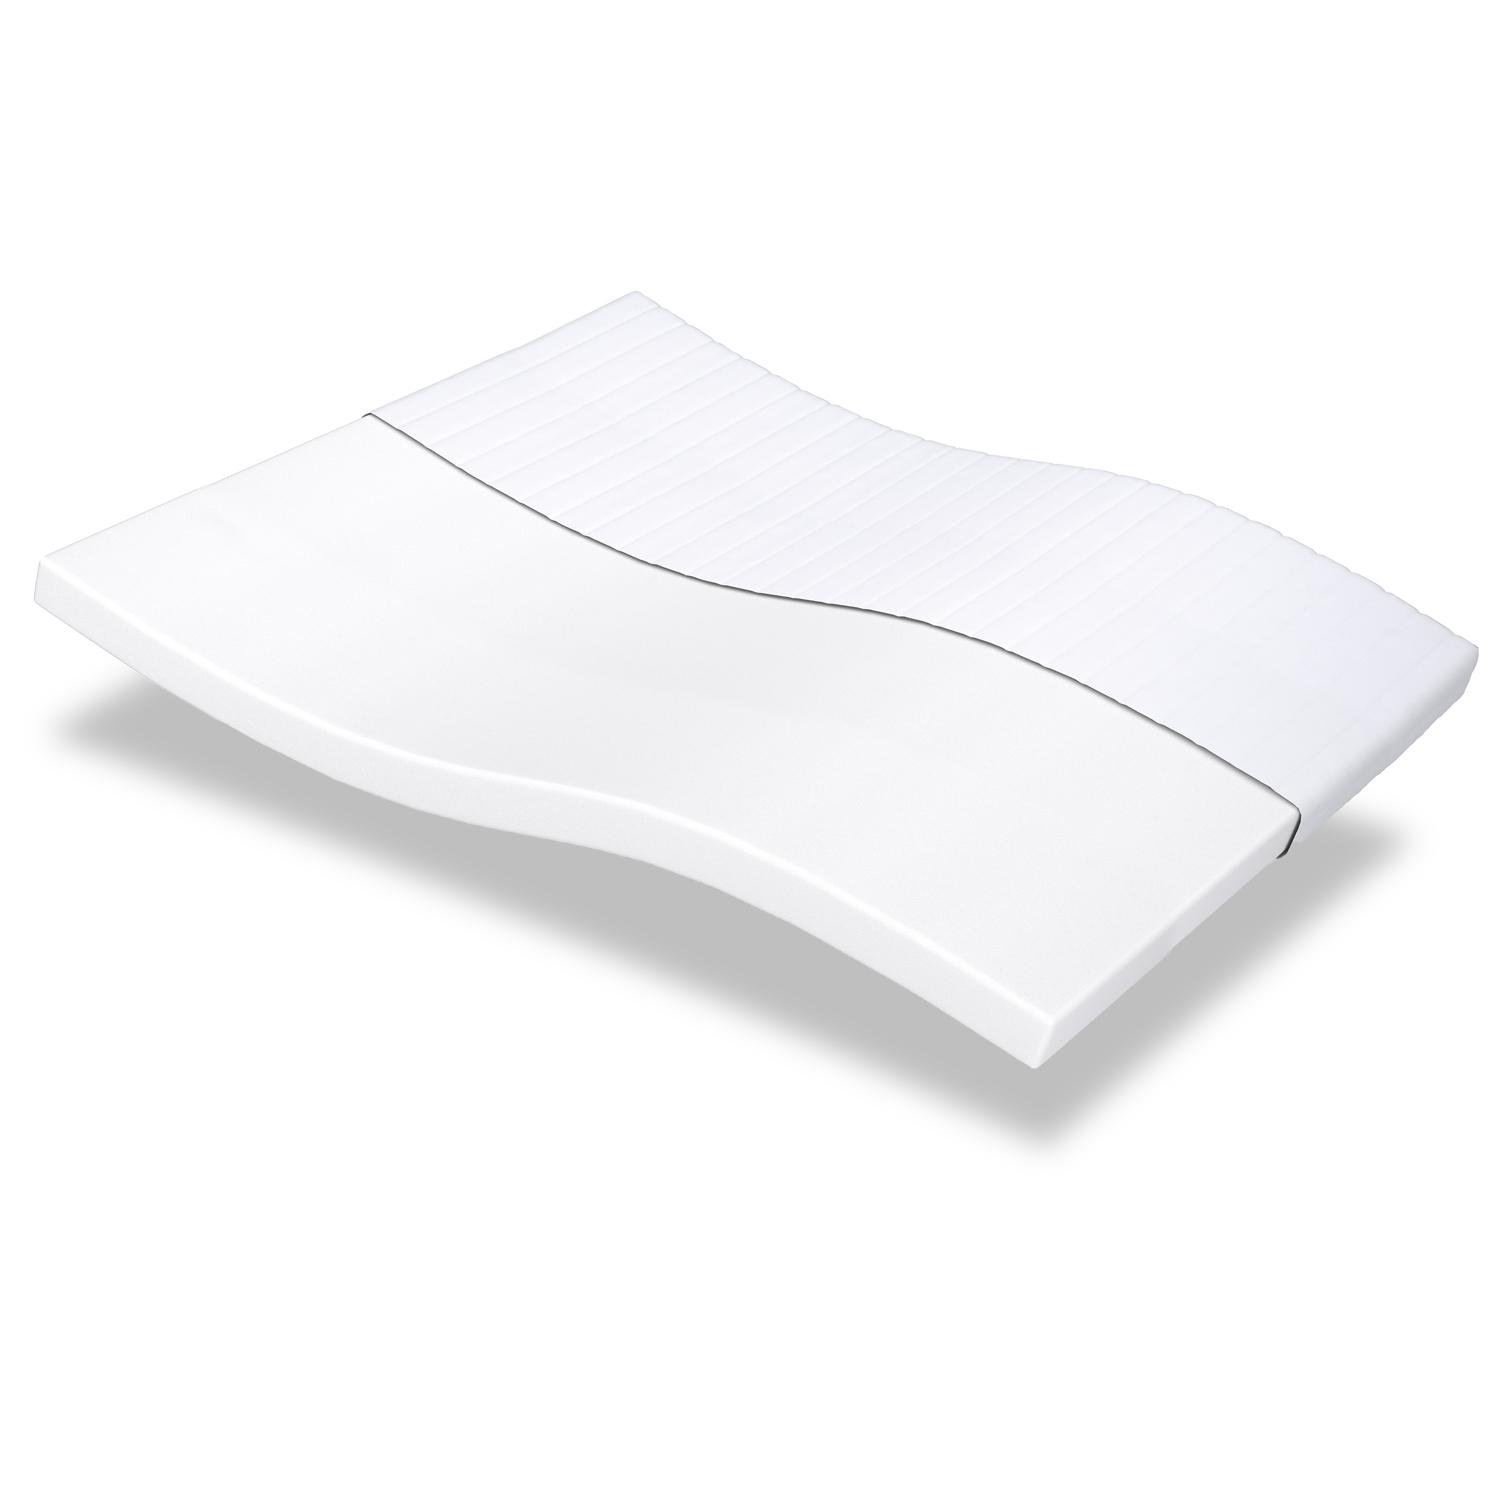 Comfort foam mattress K10 160 x 200 cm, height 10 cm, firmness level H3